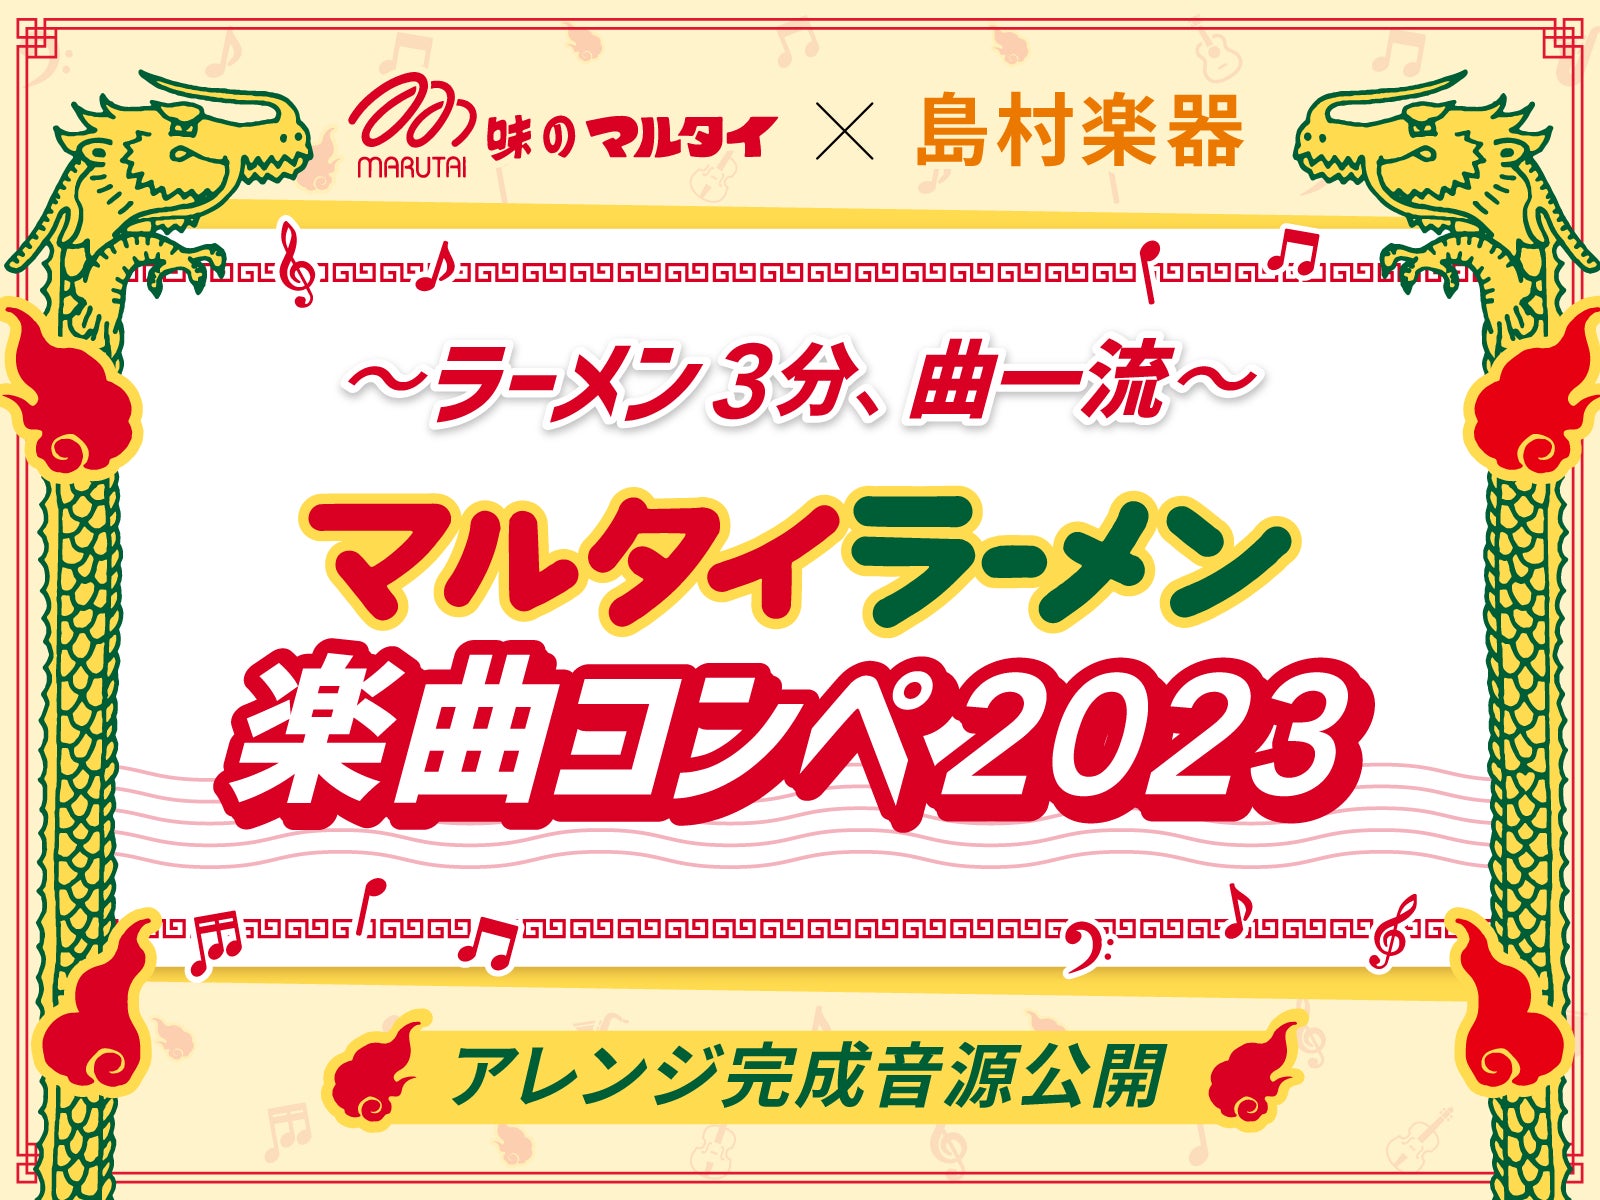 横須賀市で新たな町おこしの無料フェス、YOKOSUKA REGGAE BASH 2023開催決定!!